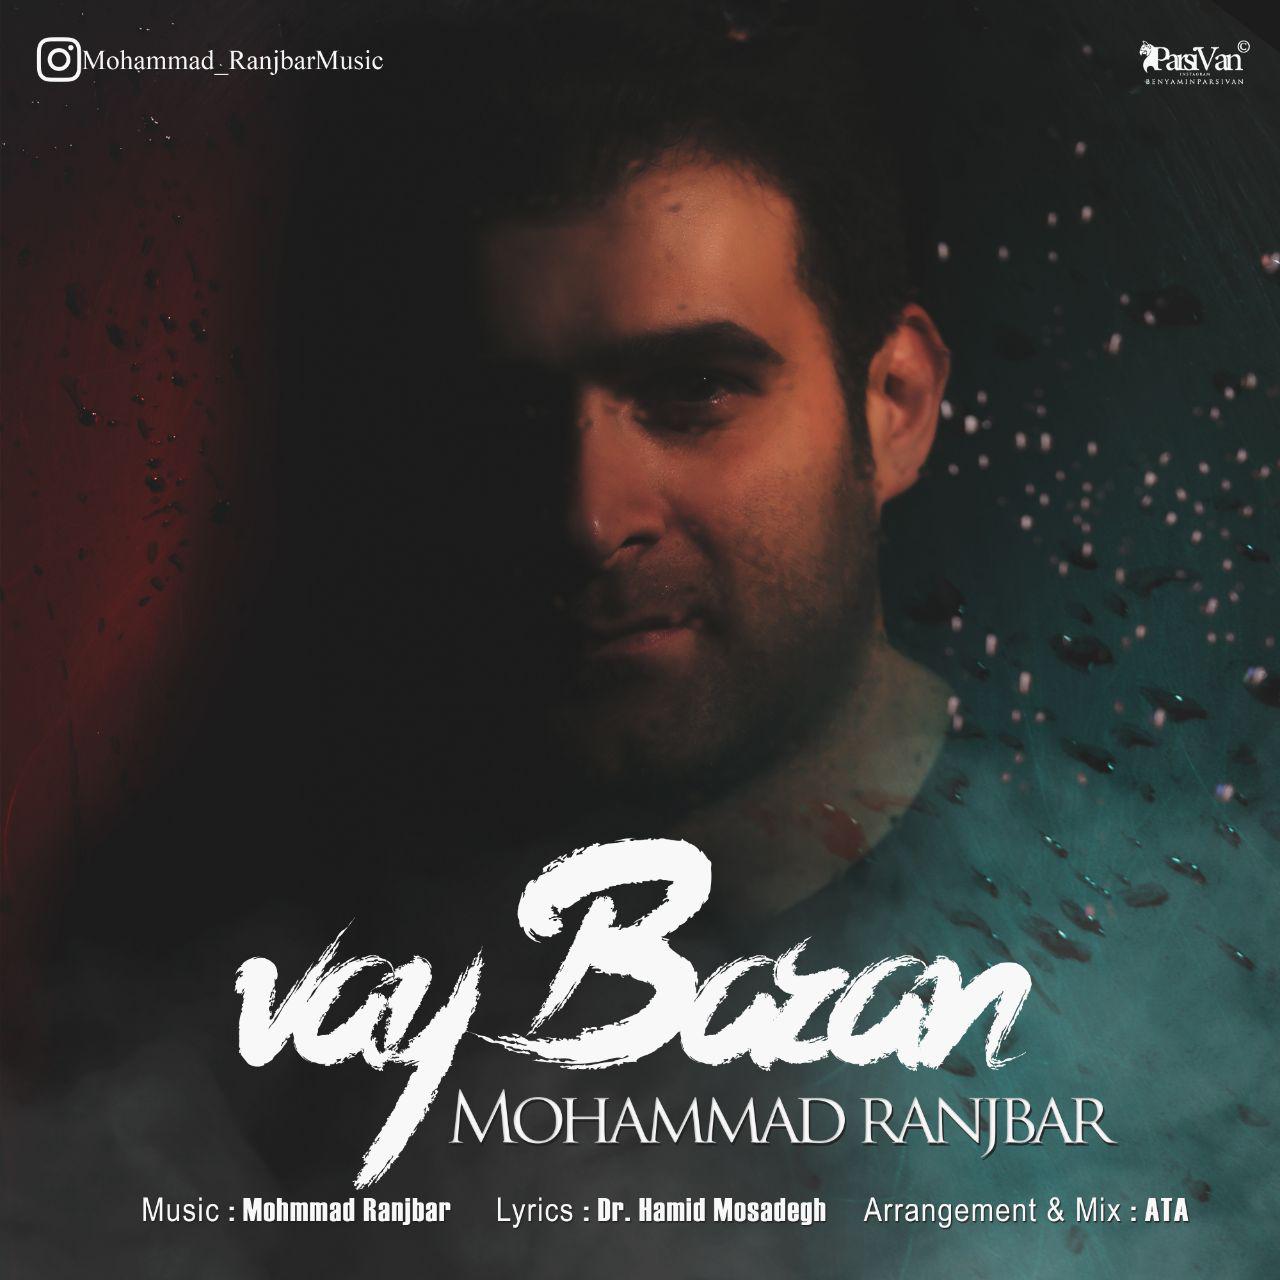  دانلود آهنگ جدید محمد رنجبر - وای باران | Download New Music By Mohammad Ranjbar - Vay Baran